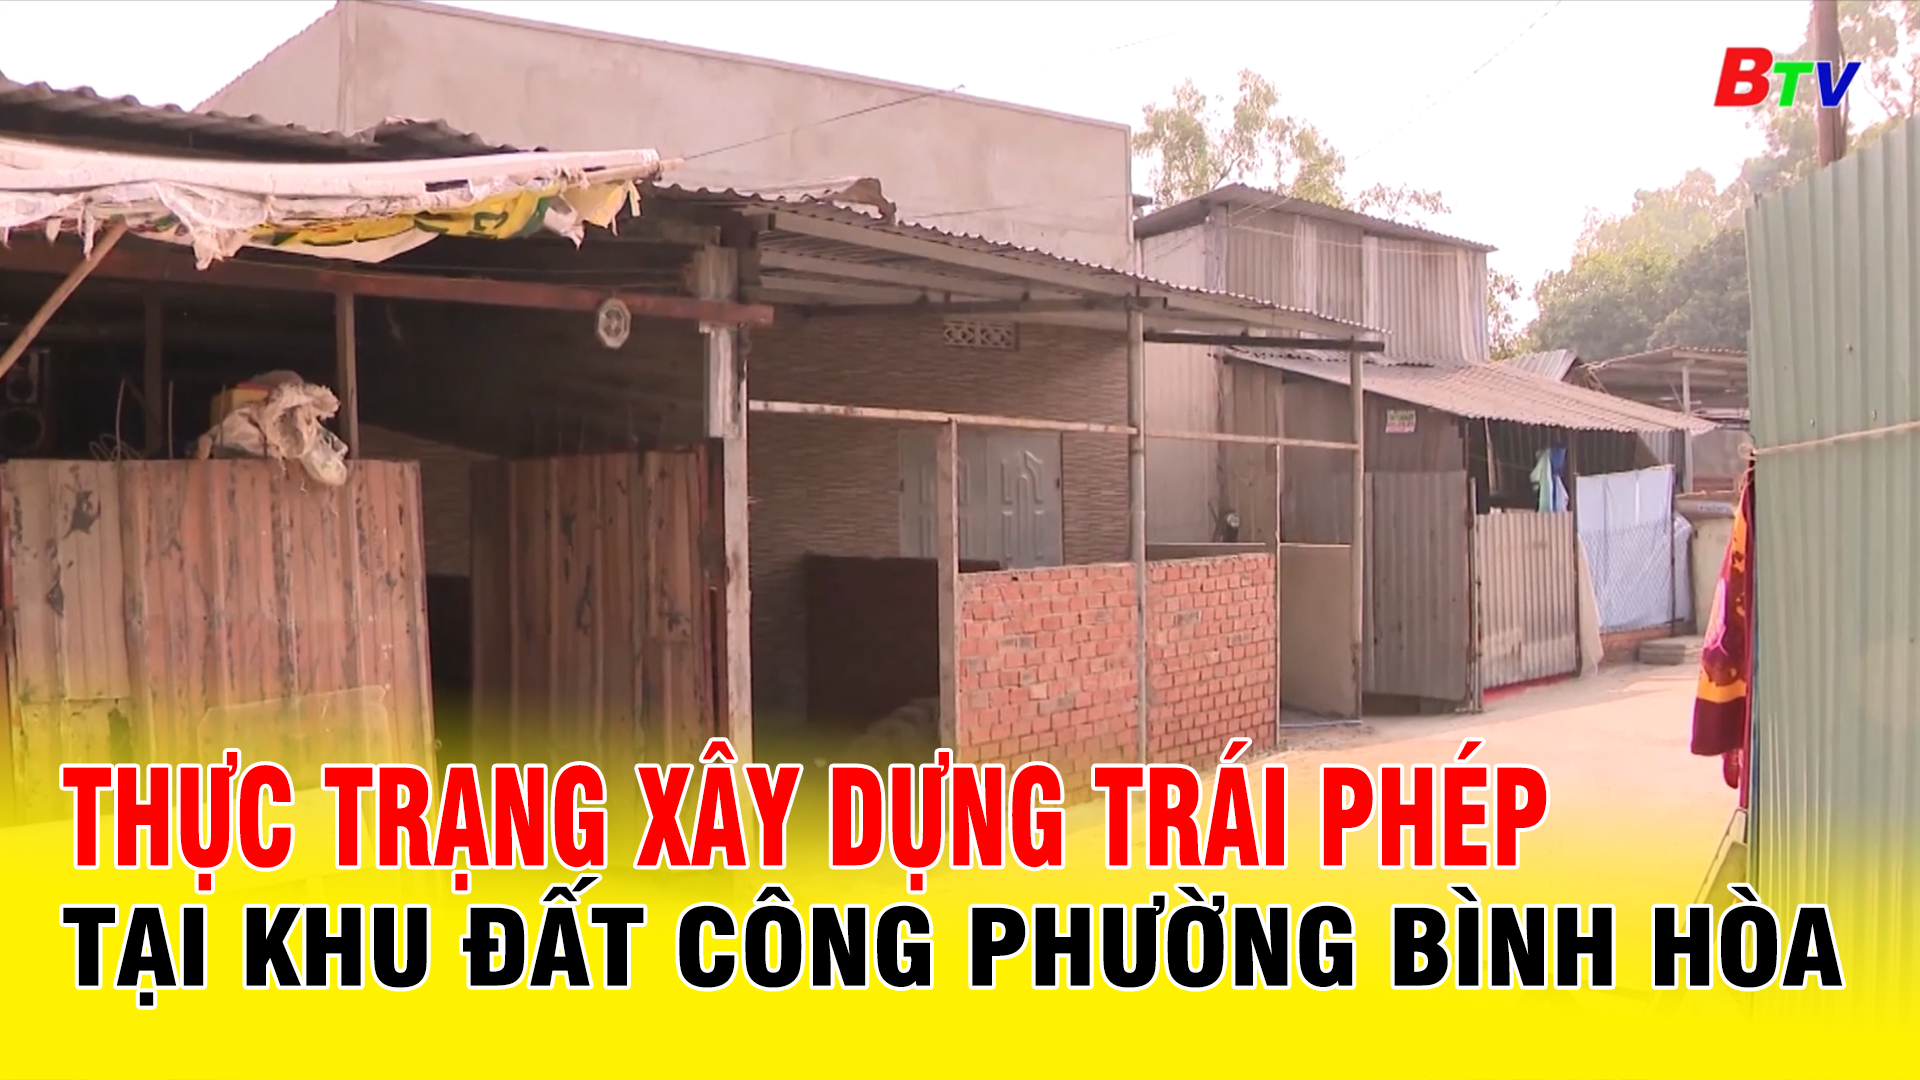 Thực trạng xây dựng trái phép tại khu đất công phường Bình Hòa